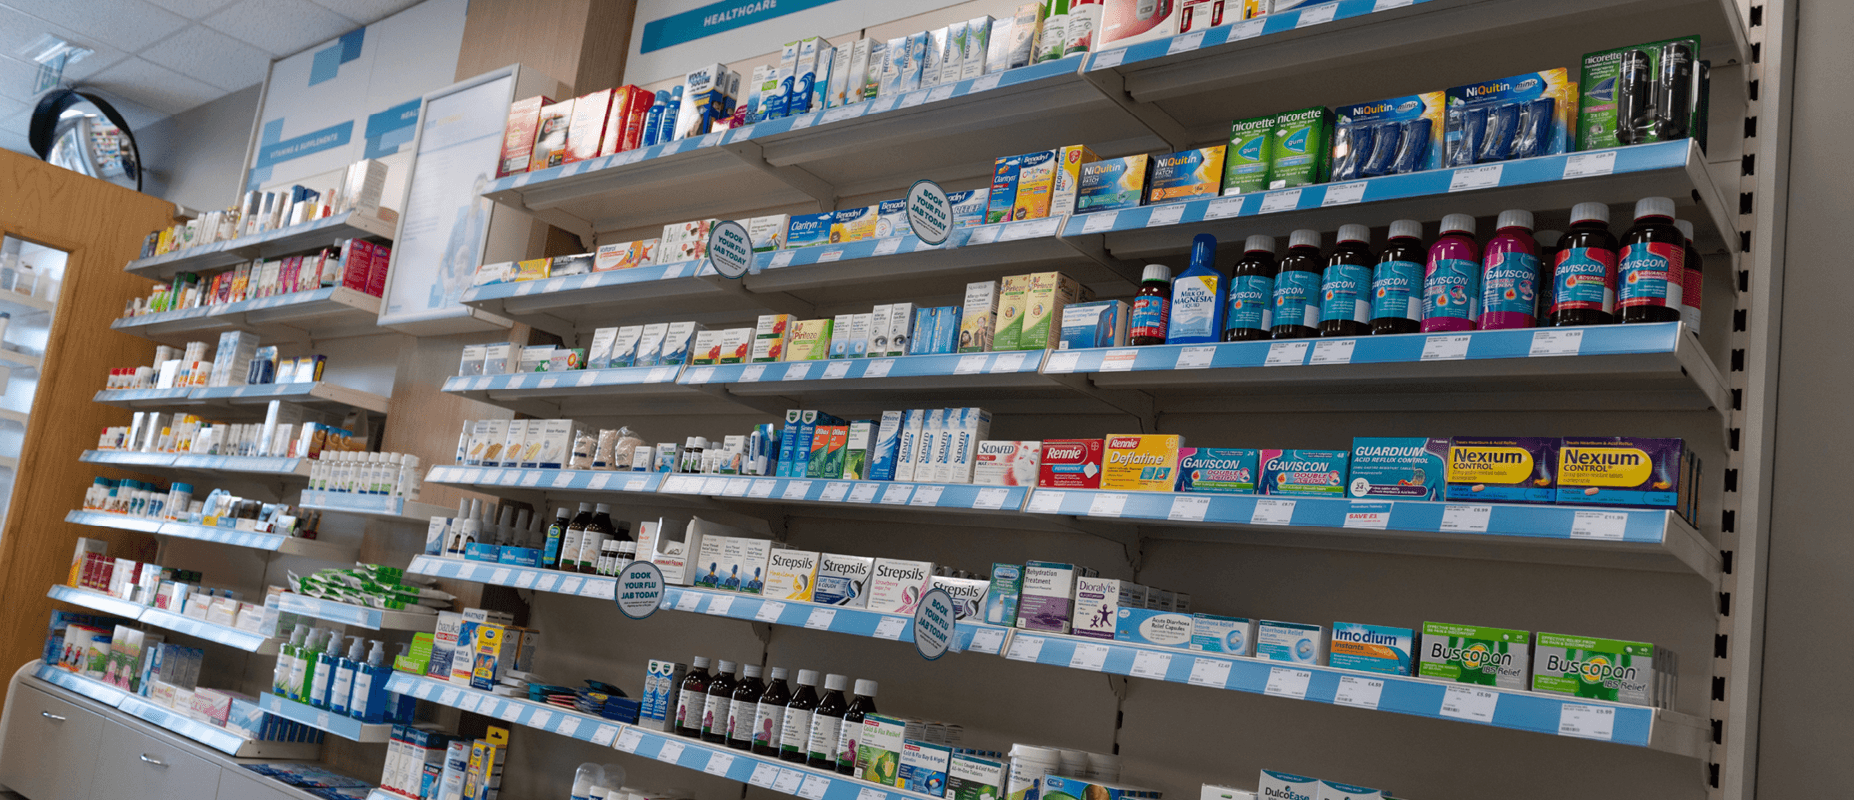 Pharmacist Shelves